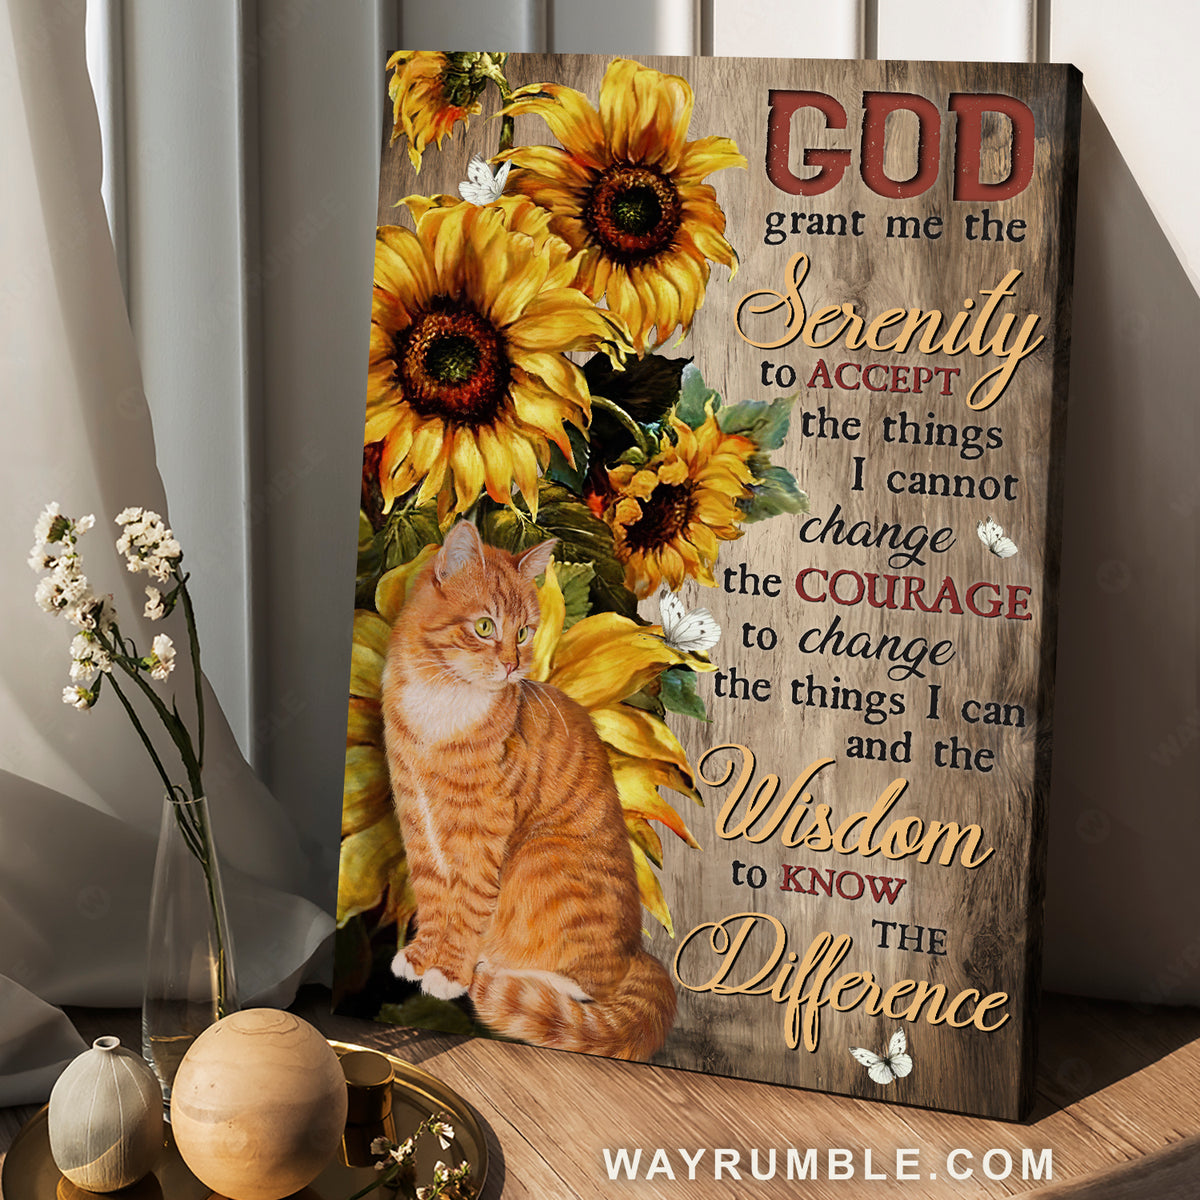 Hãy cùng ngắm nhìn mèo Tabby và hoa hướng dương lớn trên nền tảng gỗ Grant. Câu trích dẫn “God grant me the…” cũng khiến bạn có thêm động lực và cảm thấy hạnh phúc khi thưởng thức ảnh.